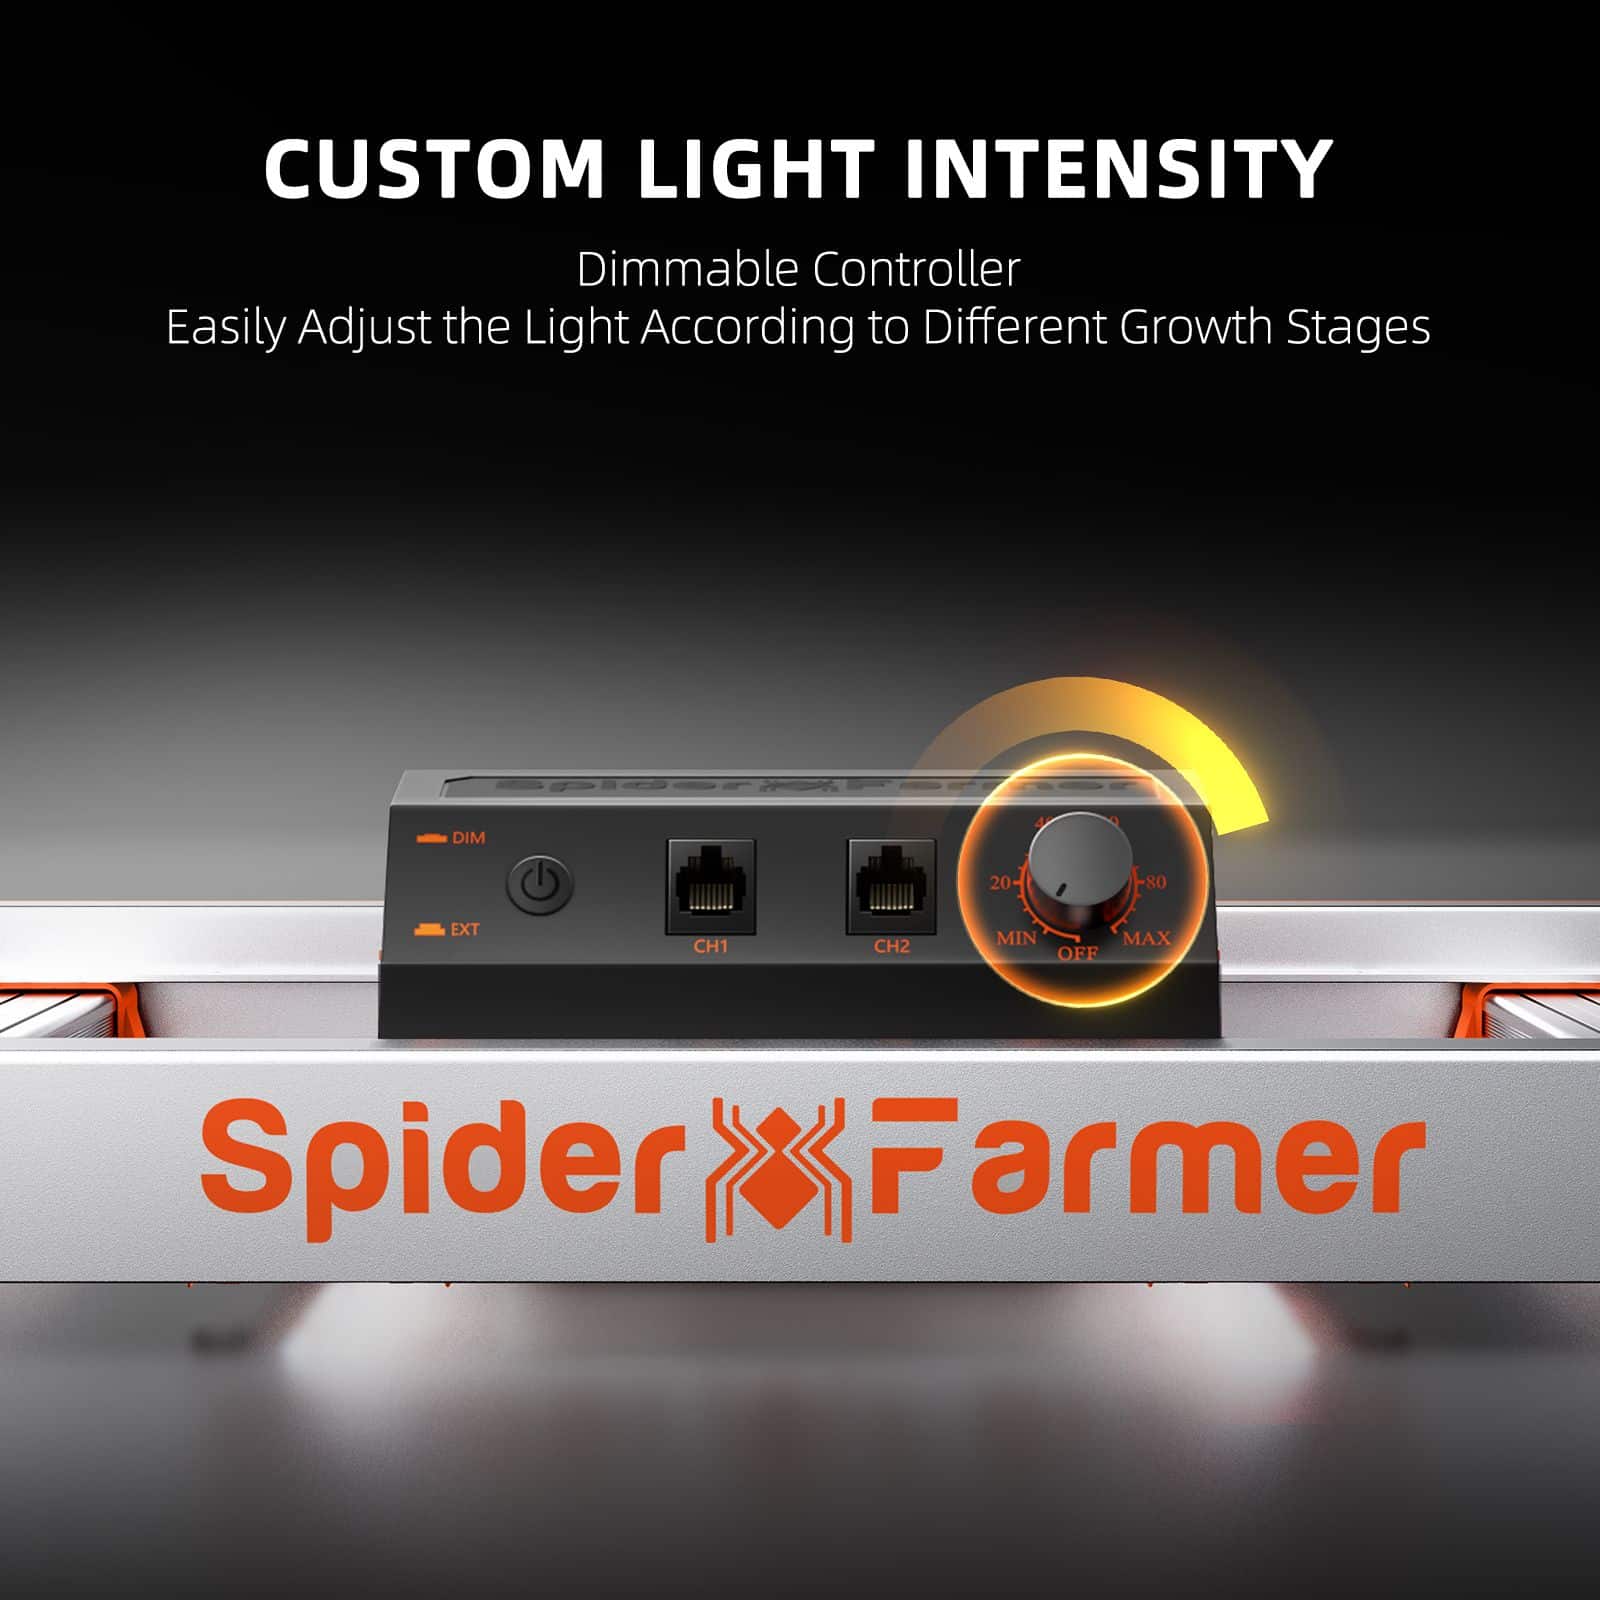 Spider Farmer® G4500 430W Cost-effective Full Spectrum LED Grow Light